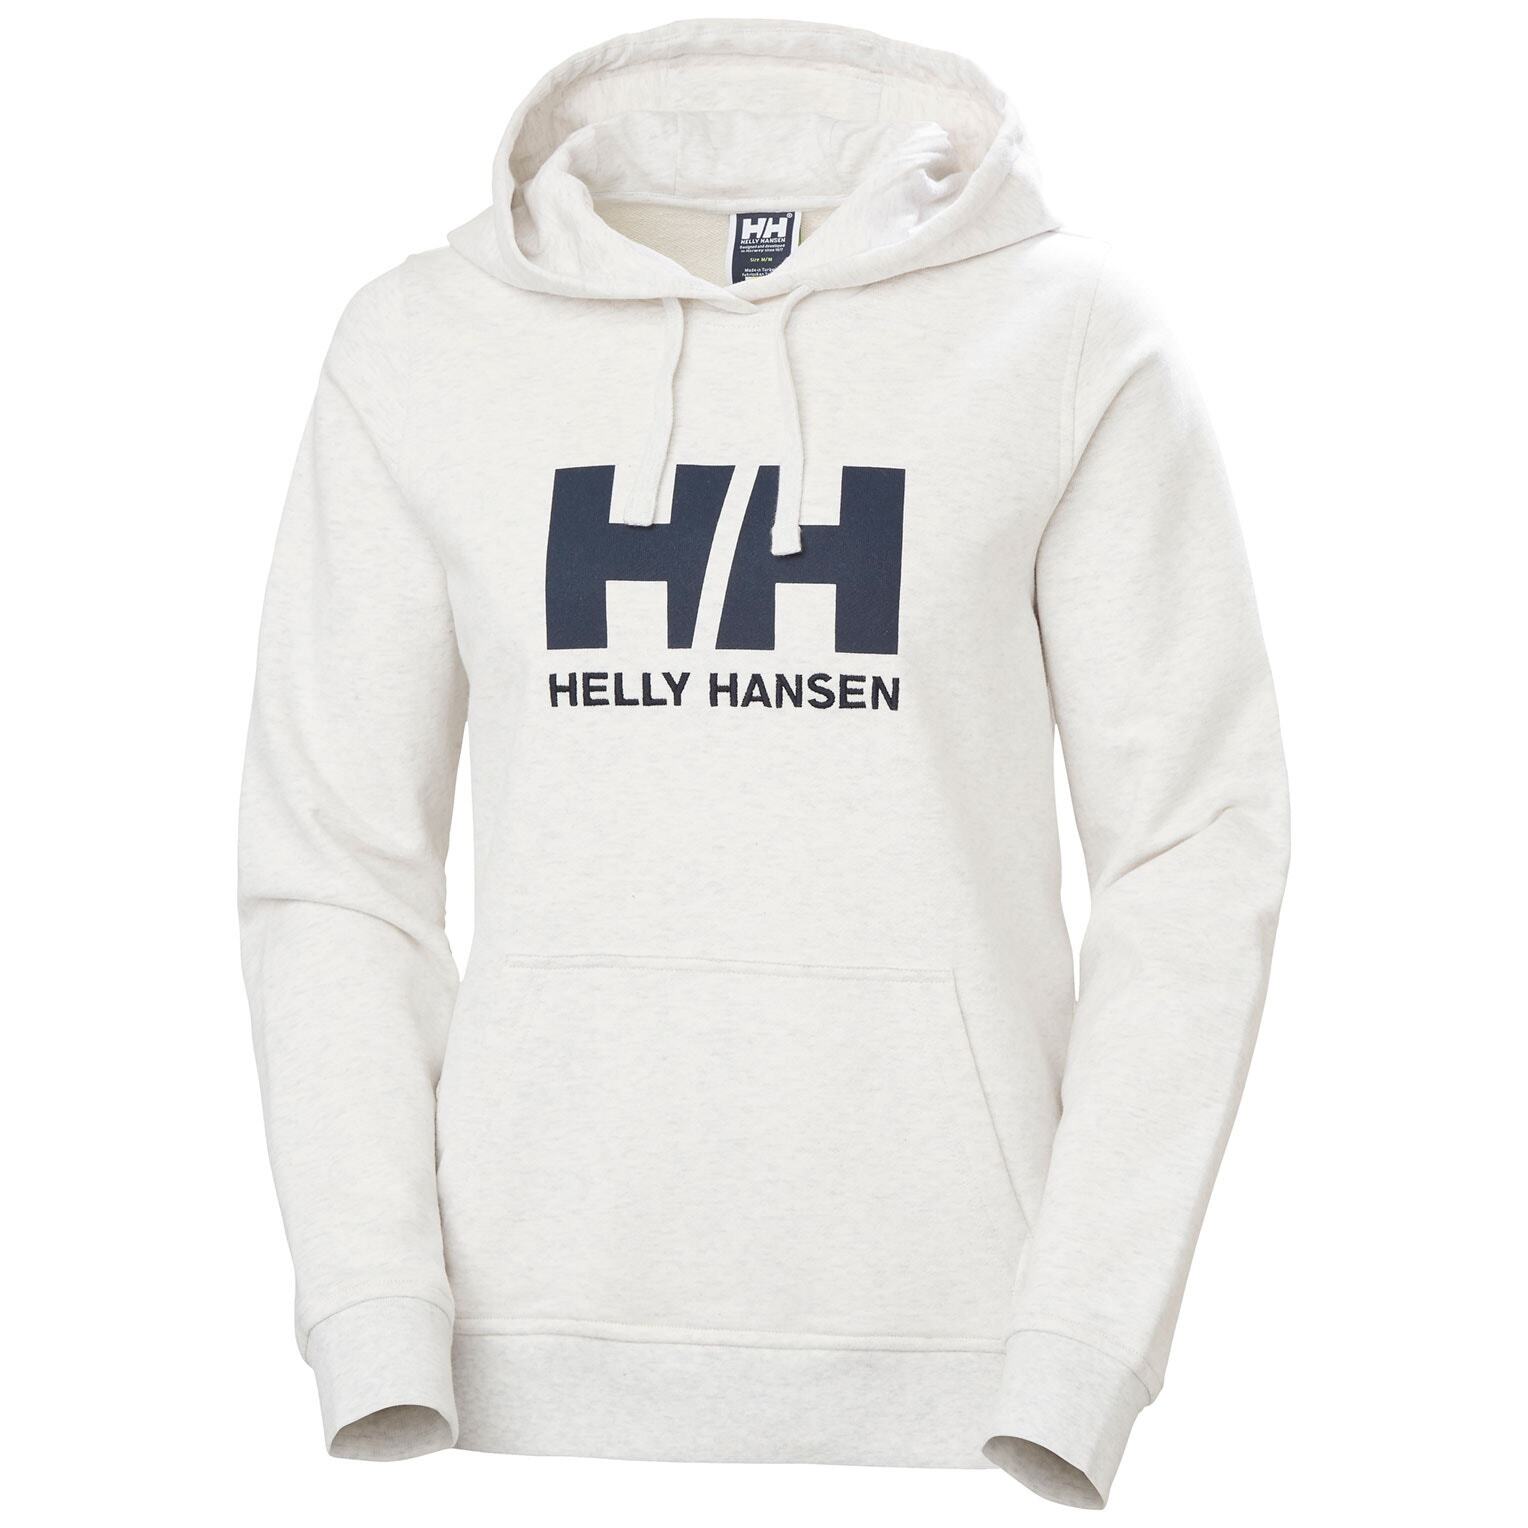 W Hh Logo hoodie mujer sudadera helly hansen multicolor xs